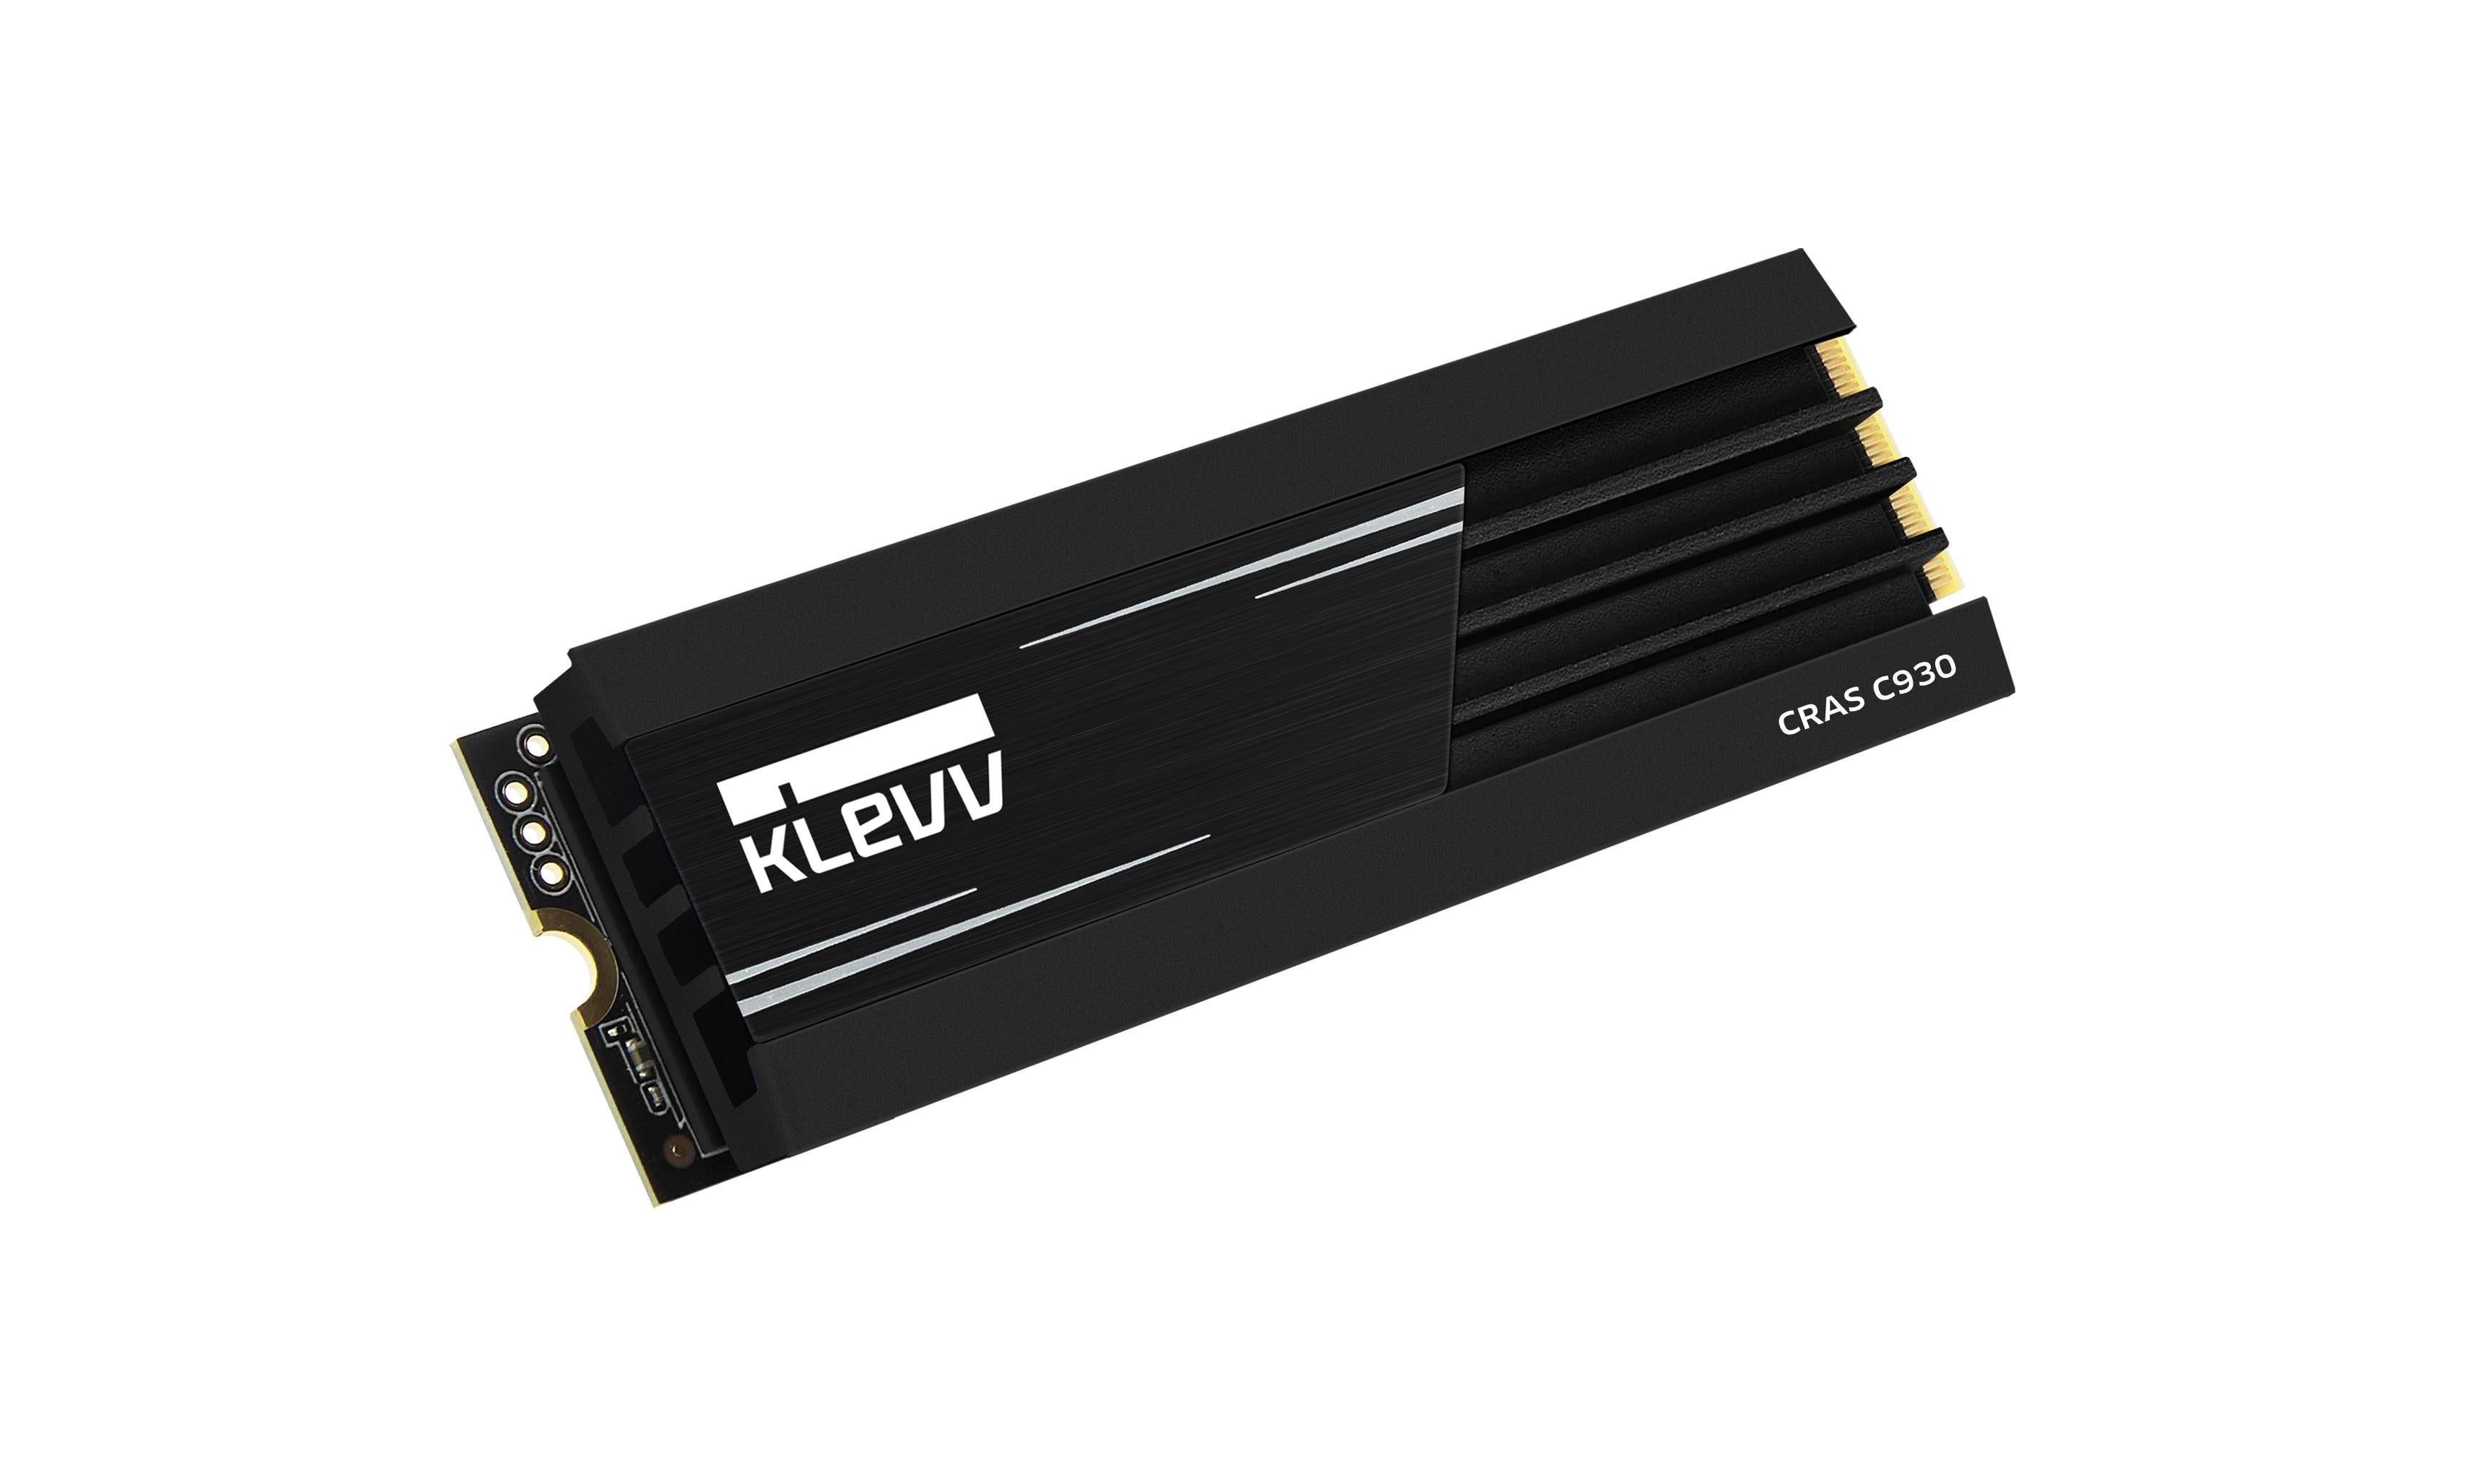 Klevv CRAS C930 PCIe 4.0 1TB (К01TBM2SPO-C93) (7400MB/s)